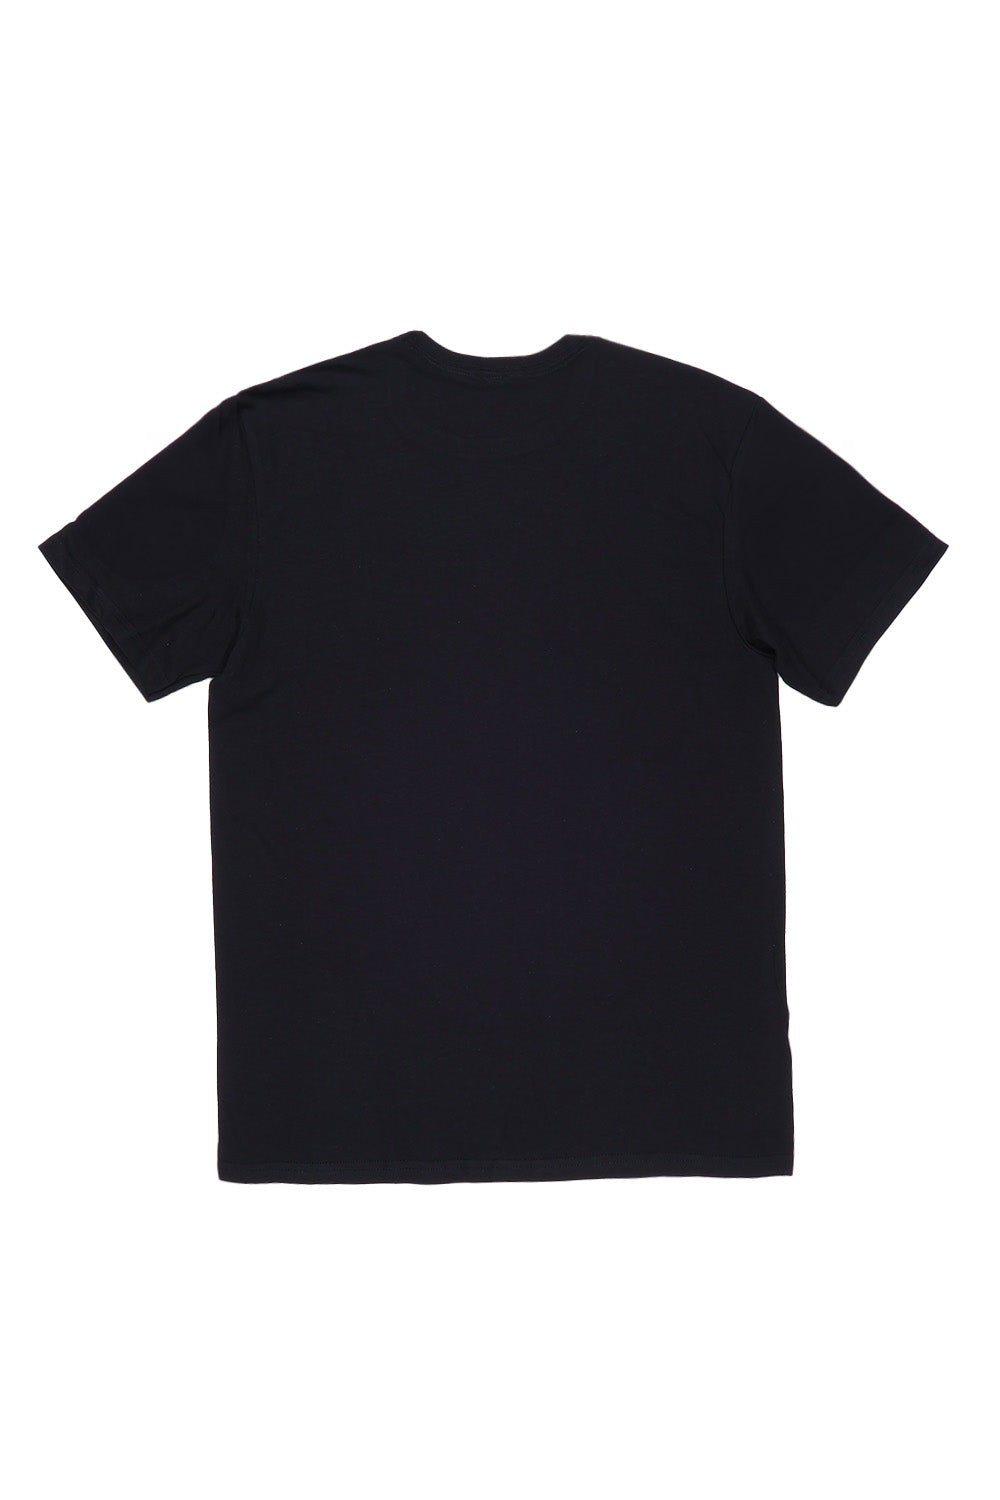 Better Days Ahead Bow's T-Shirt in Black (Custom Packs)